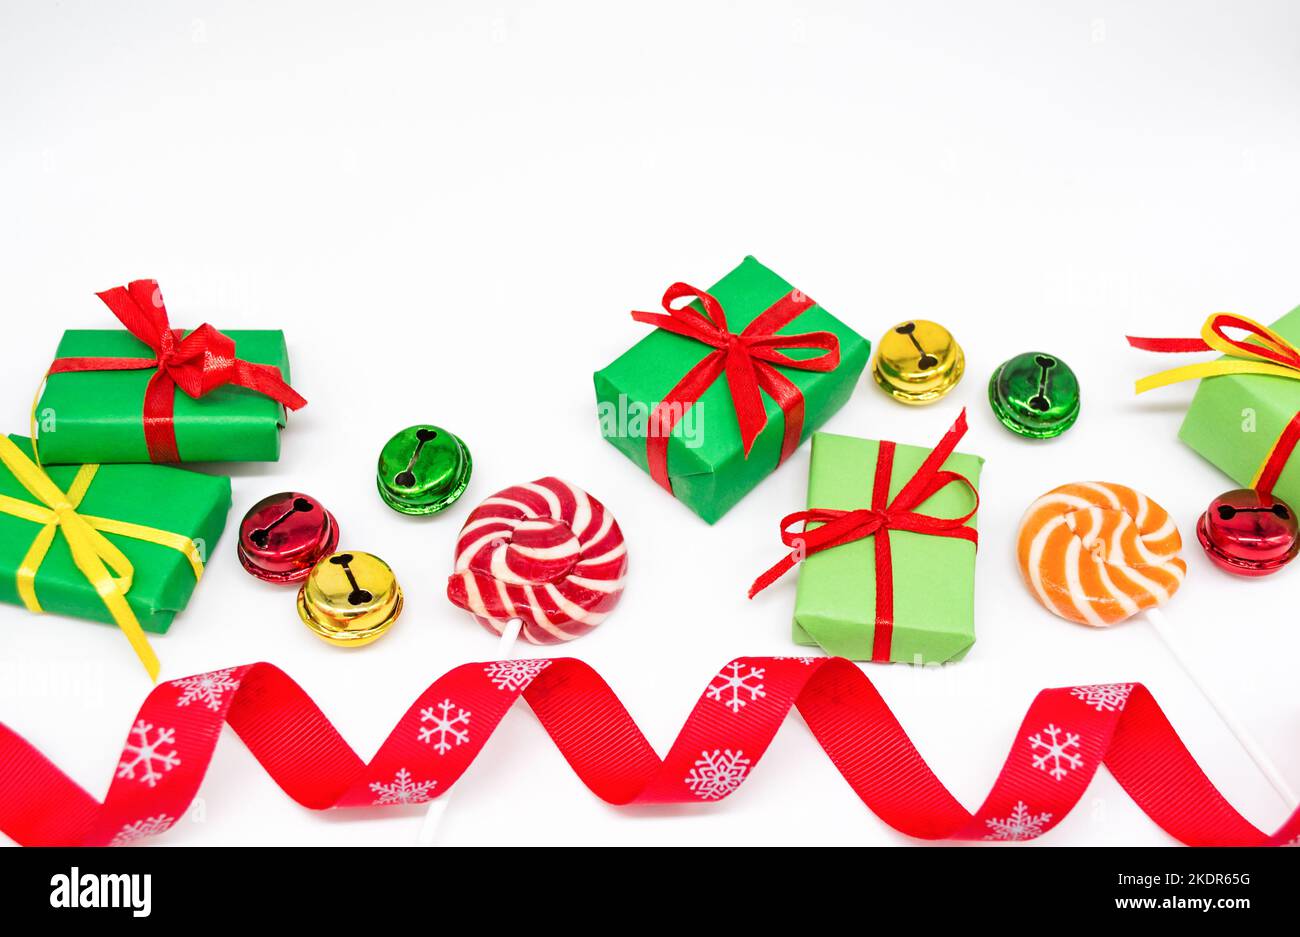 Buone feste: Regali con lecca lecca e campane rosse, verdi, dorate. Nastro rosso su sfondo bianco, spazio di copia. Il concetto di Natale, le vendite. Foto Stock